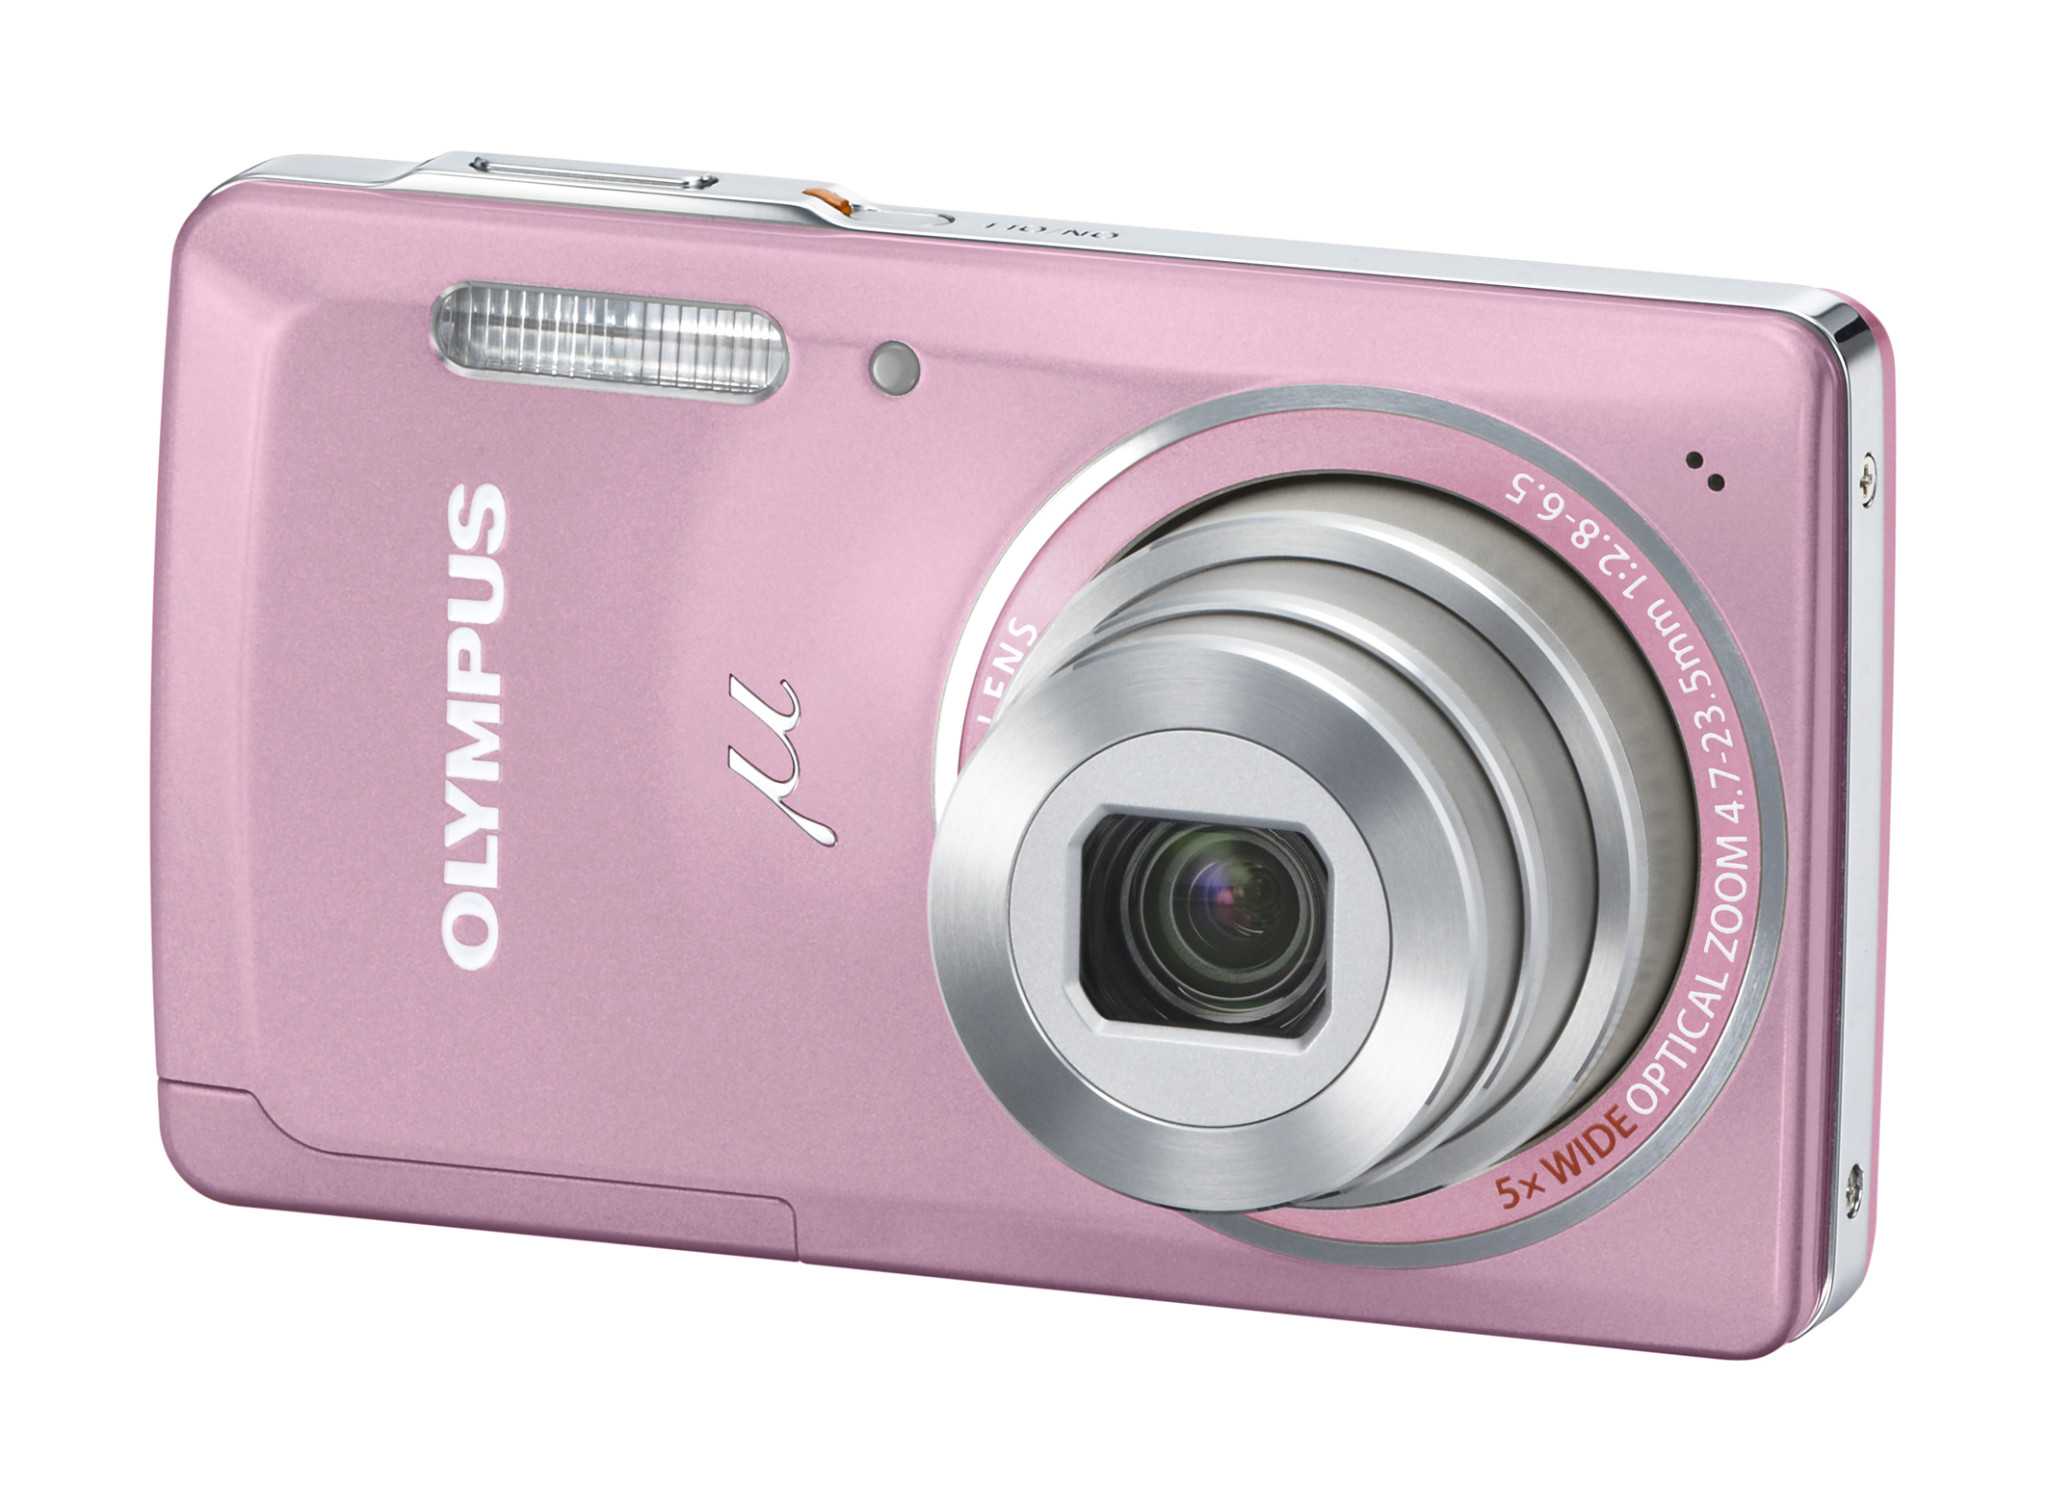 Цифровой фотоаппарат Olympus Stylus µ 5010 - подробные характеристики обзоры видео фото Цены в интернет-магазинах где можно купить цифровую фотоаппарат Olympus Stylus µ 5010